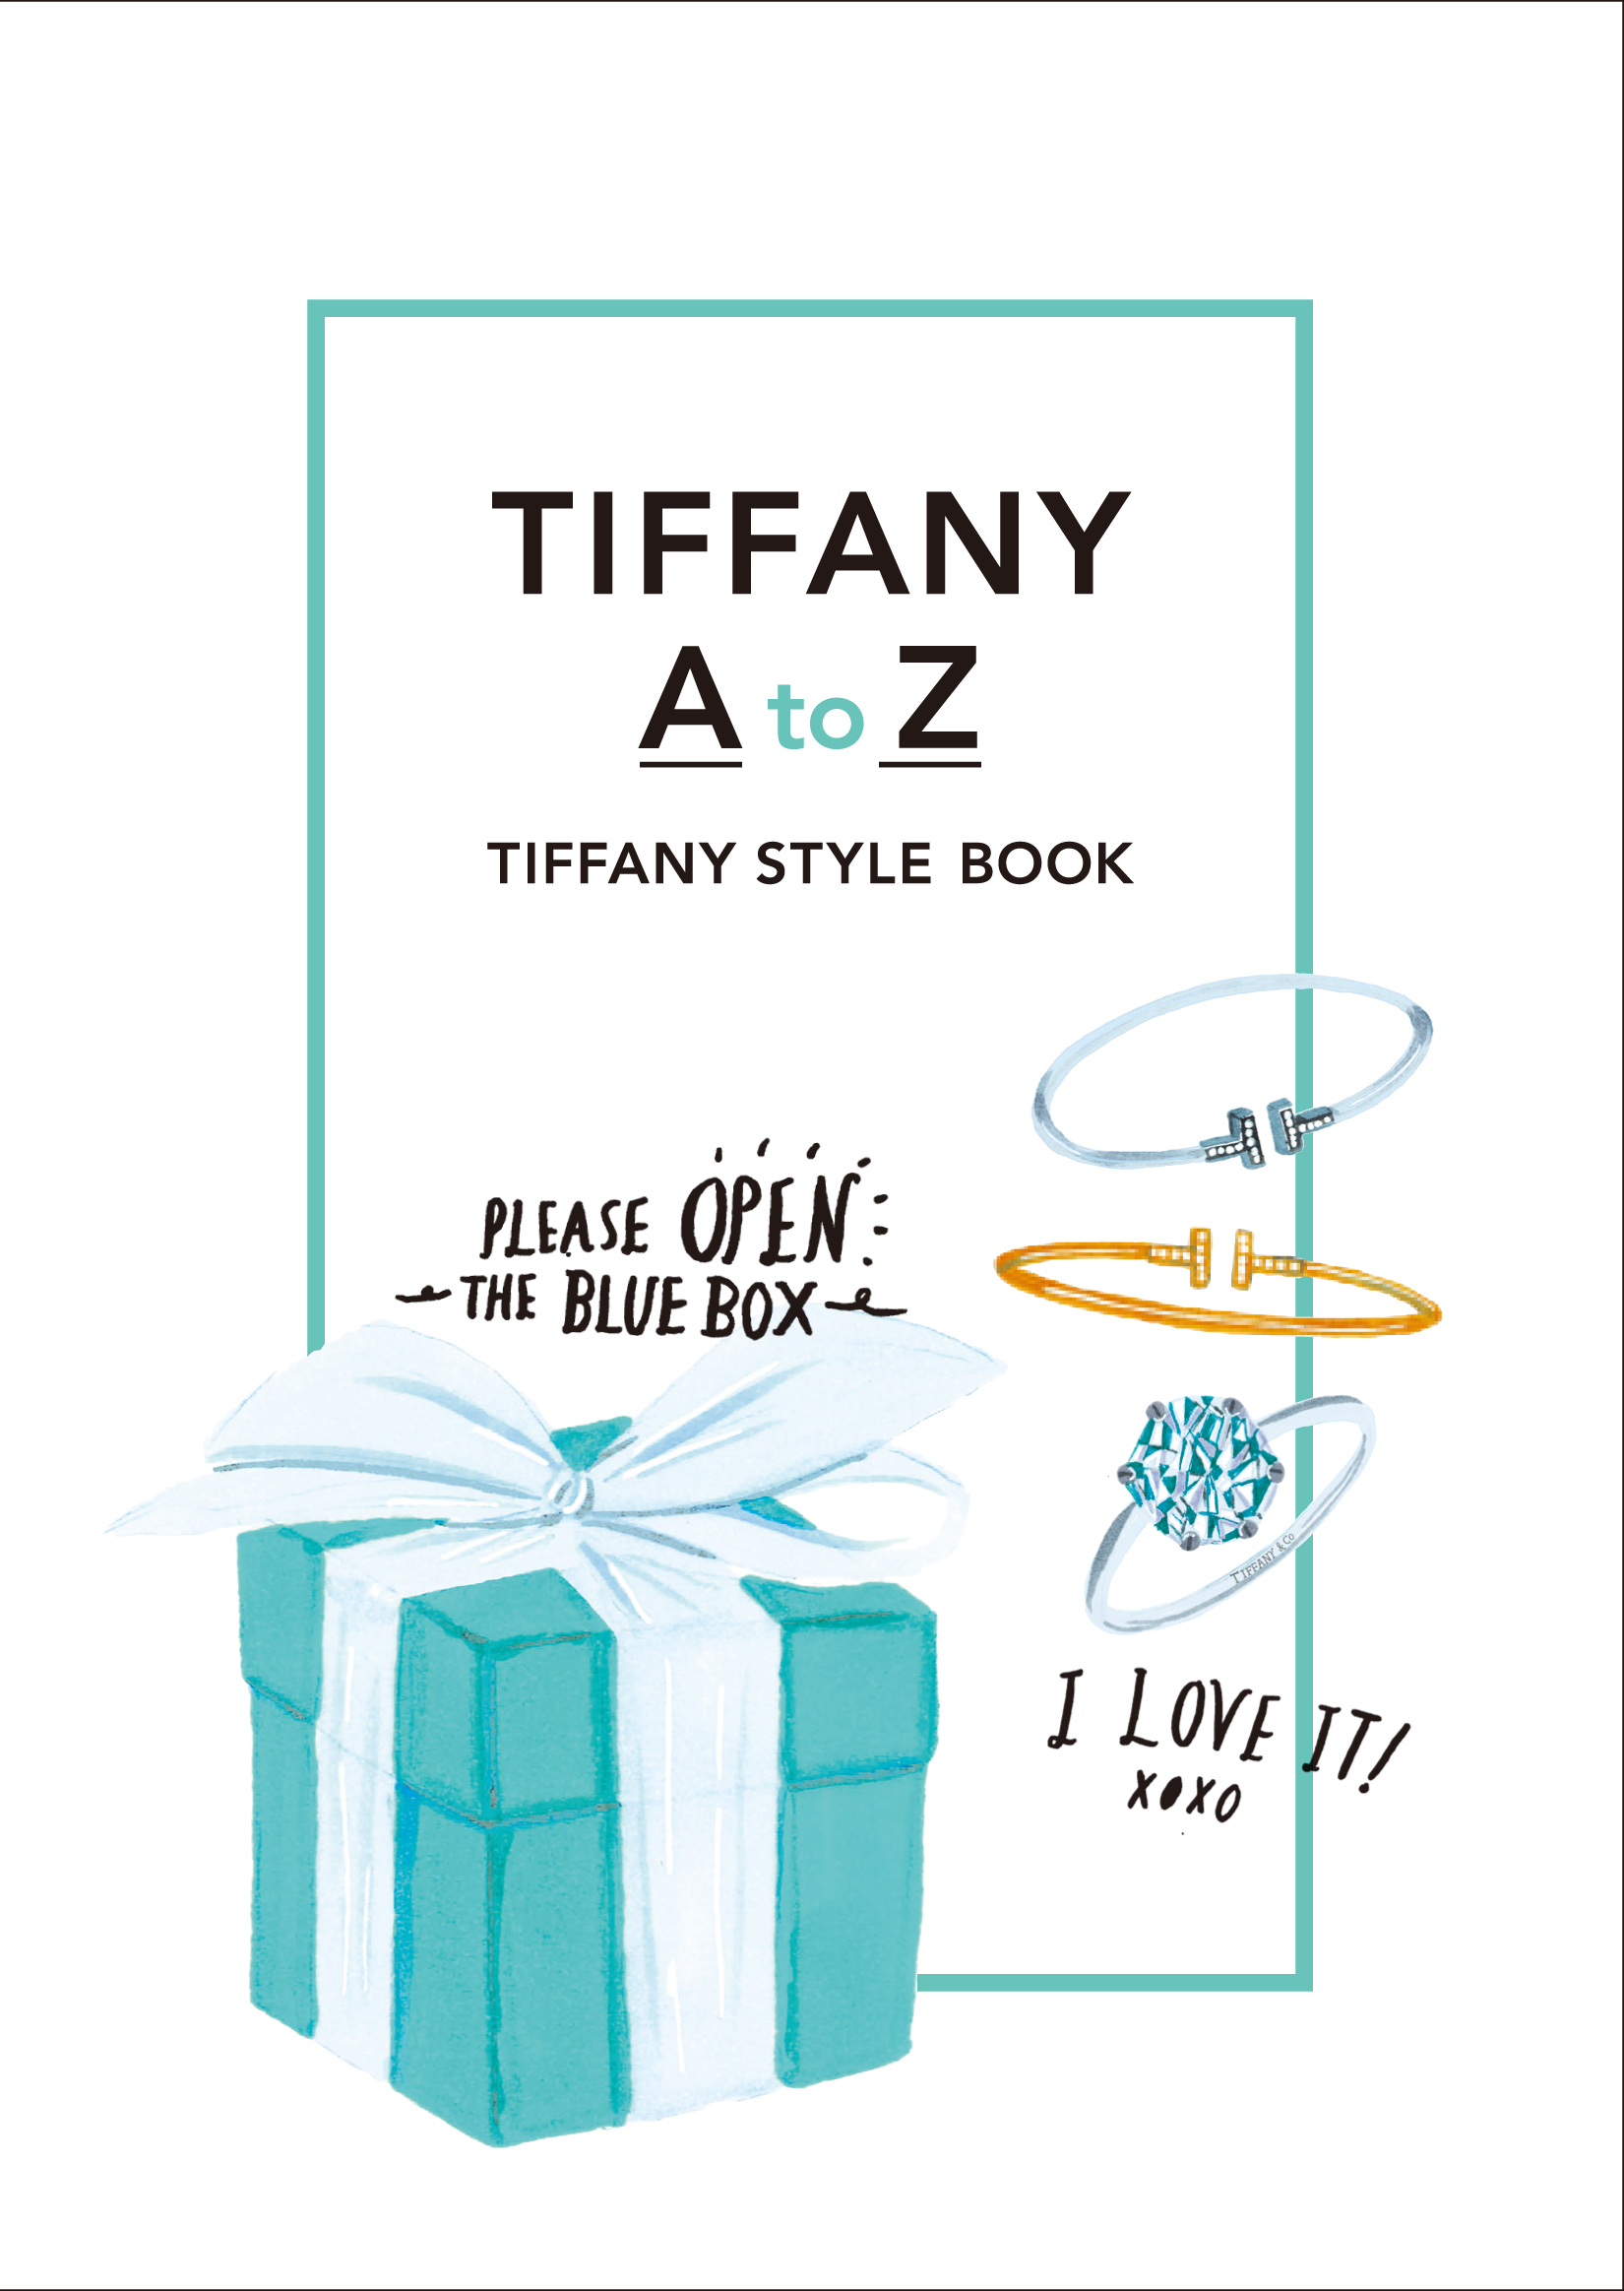 12 17発売 Tiffany Co の刻印が入ったnyティファニーが製作したオリジナルusbメモリ付き おしゃれなスタイルブック Tiffany A To Z を限定発売 株式会社 幻冬舎のプレスリリース